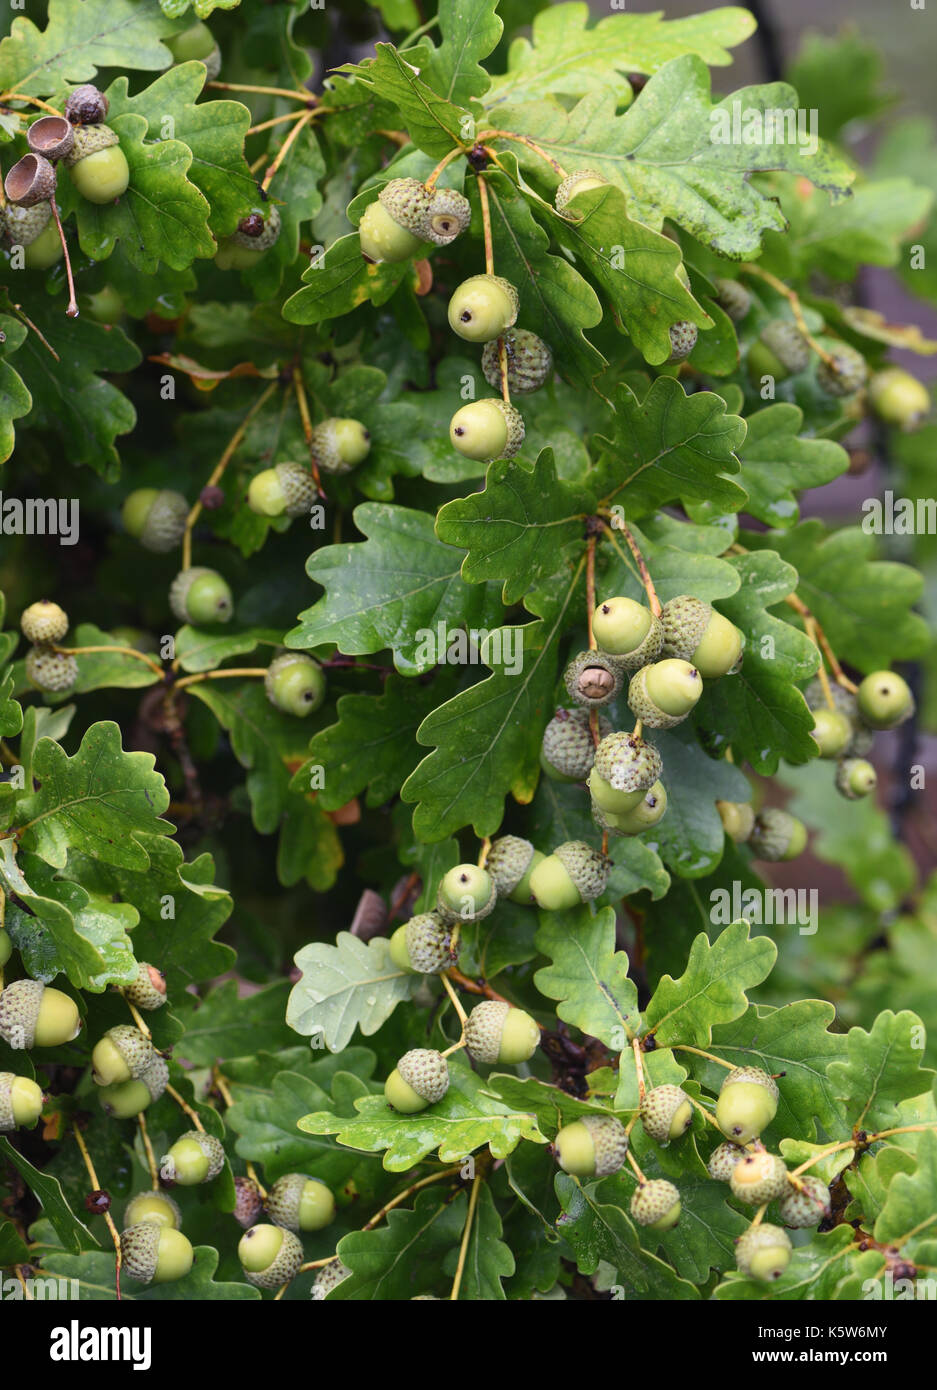 Une grosse récolte de glands, le fruit d'un arbre le chêne pédonculé (Quercus robur). Woodchurch, Kent, UK. Banque D'Images